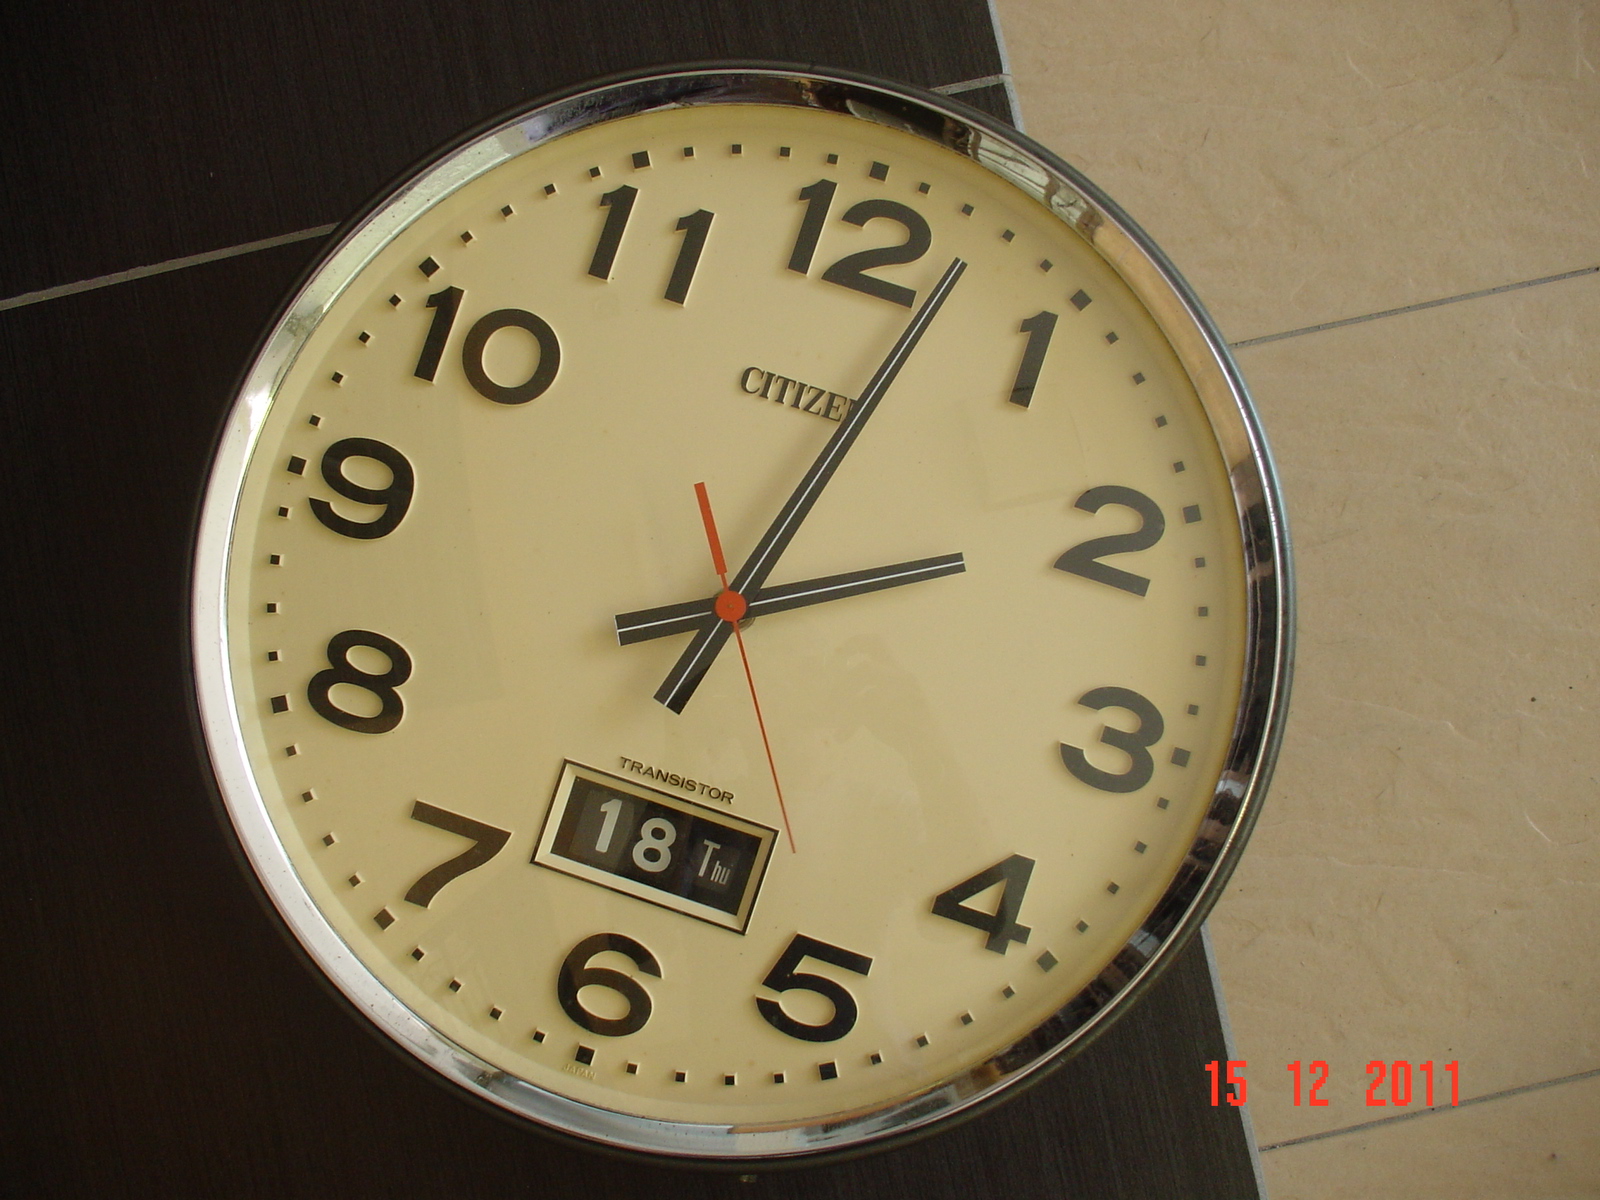 Lan-JamKoleksi: 43. Citizen Transistor Wall Clock